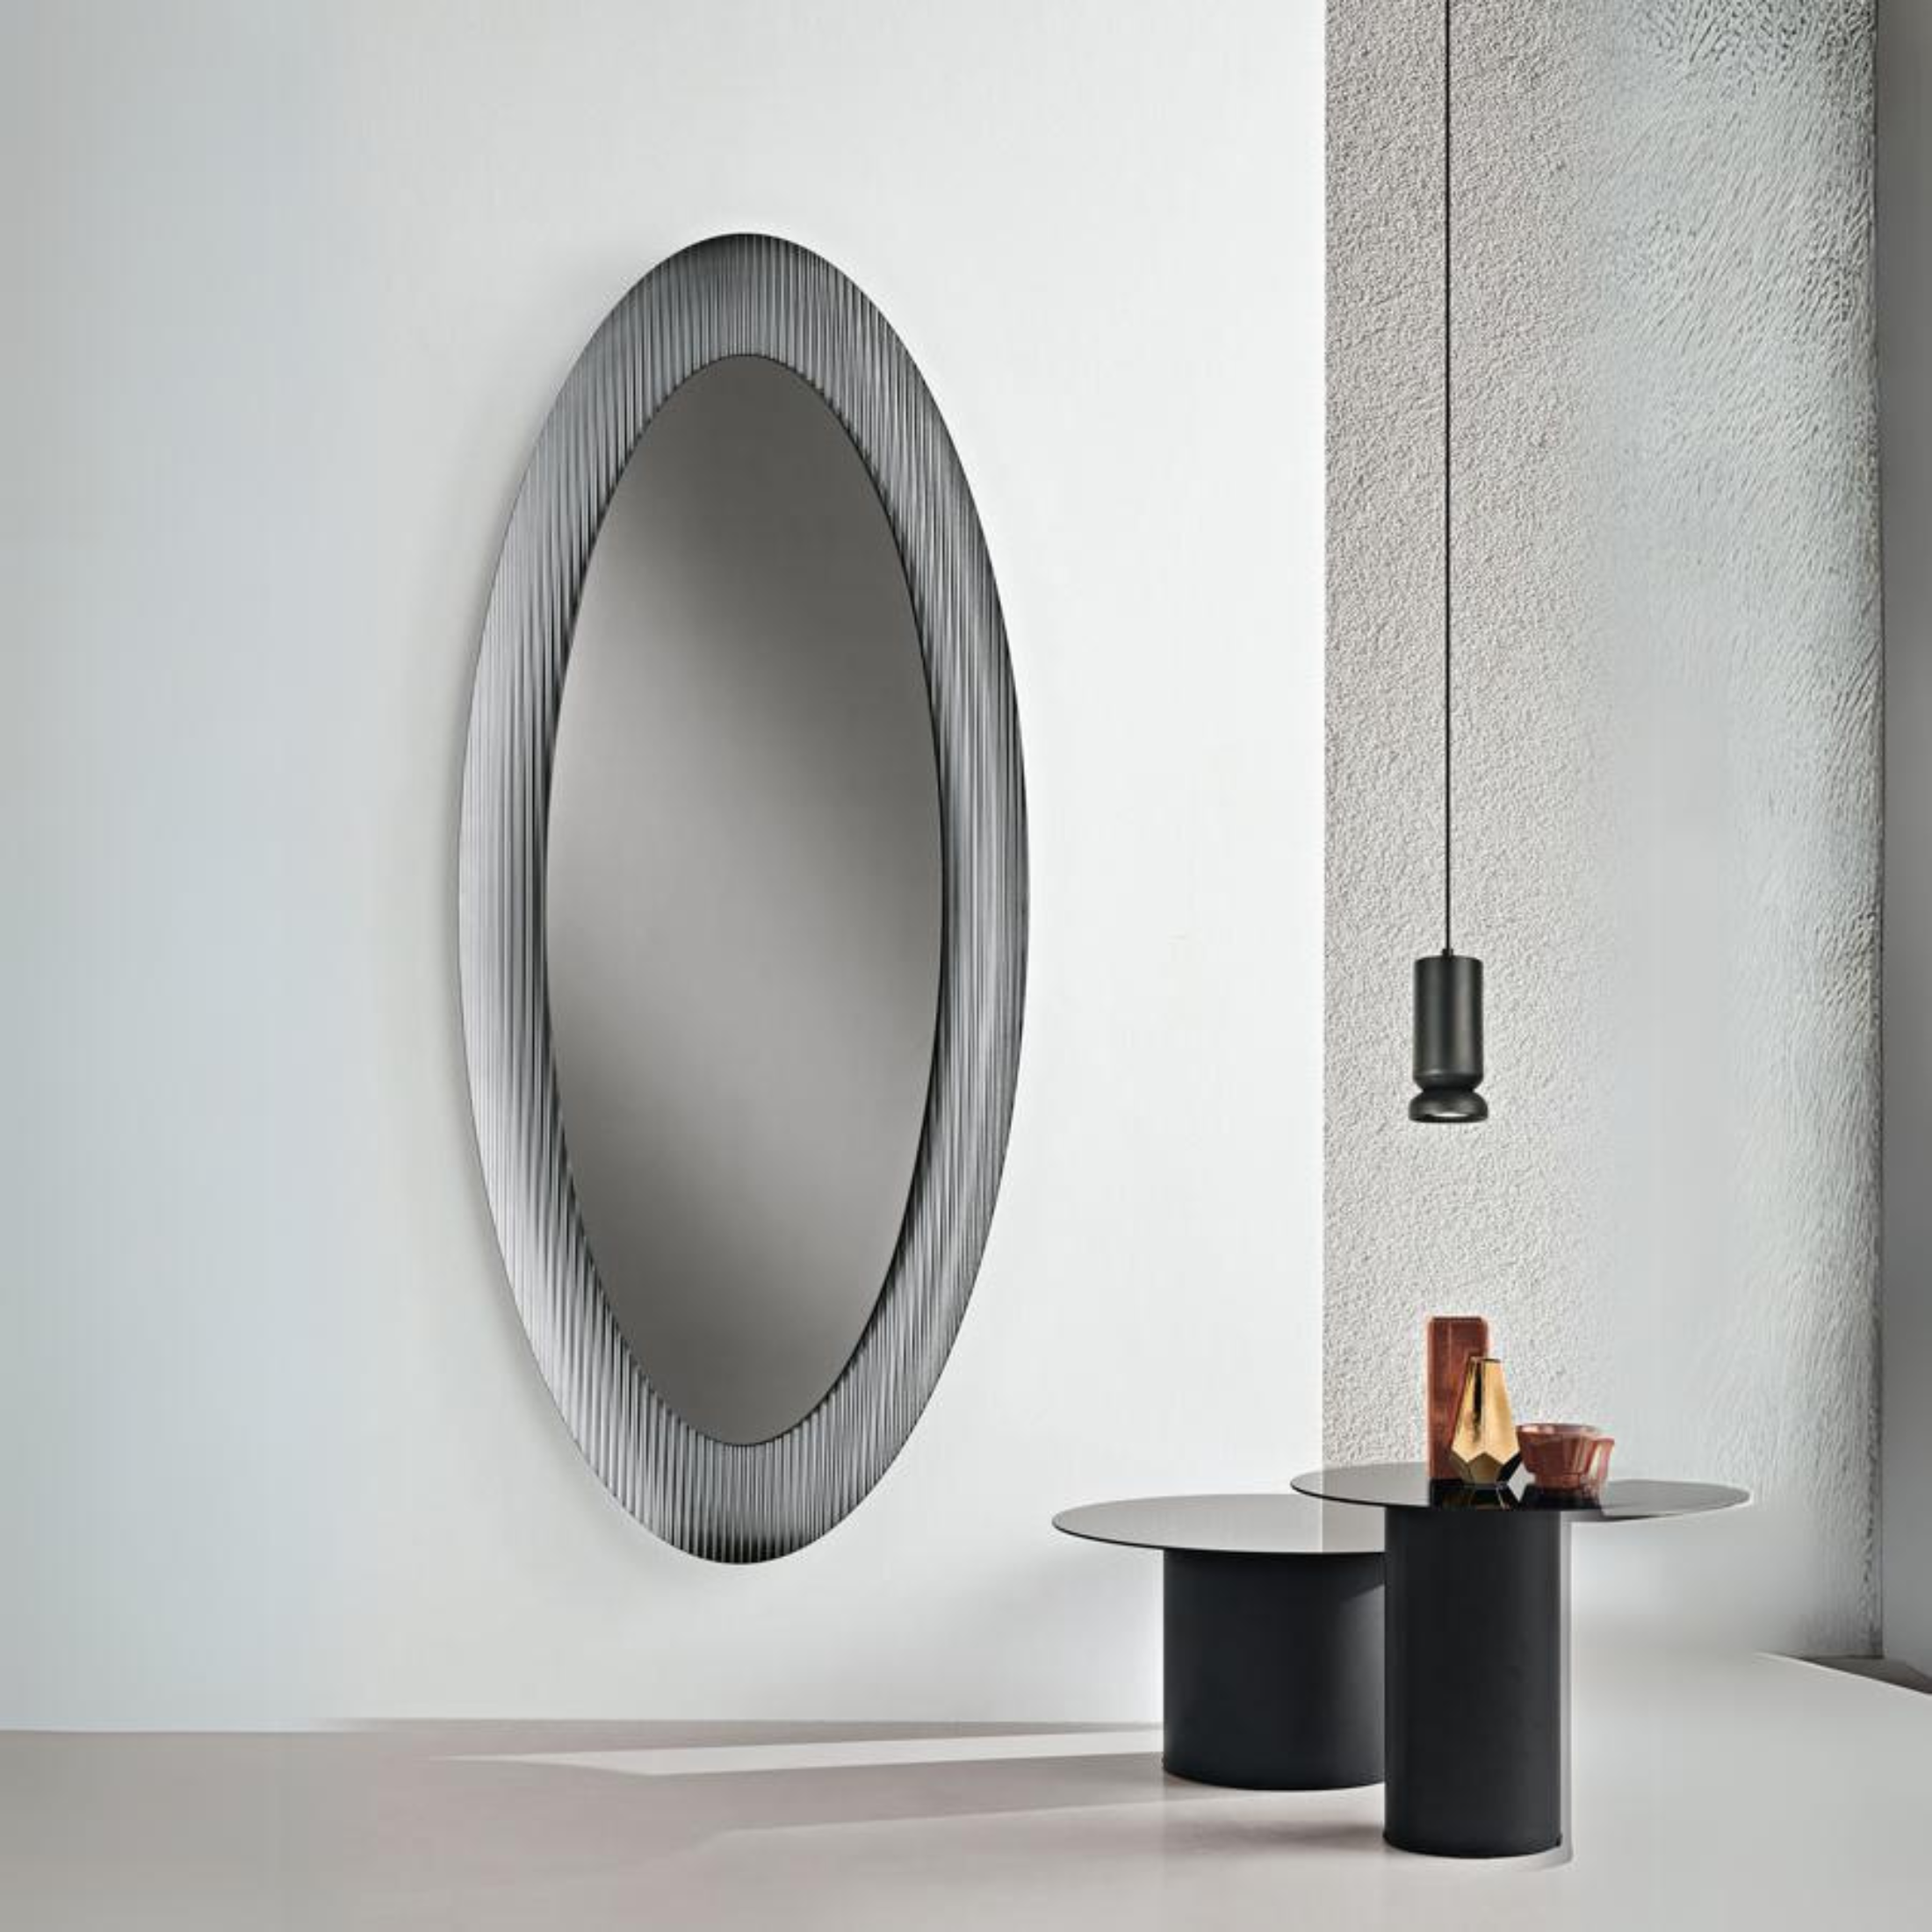 Specchio da parete "Enea" moderno con maxi cornice cannettata